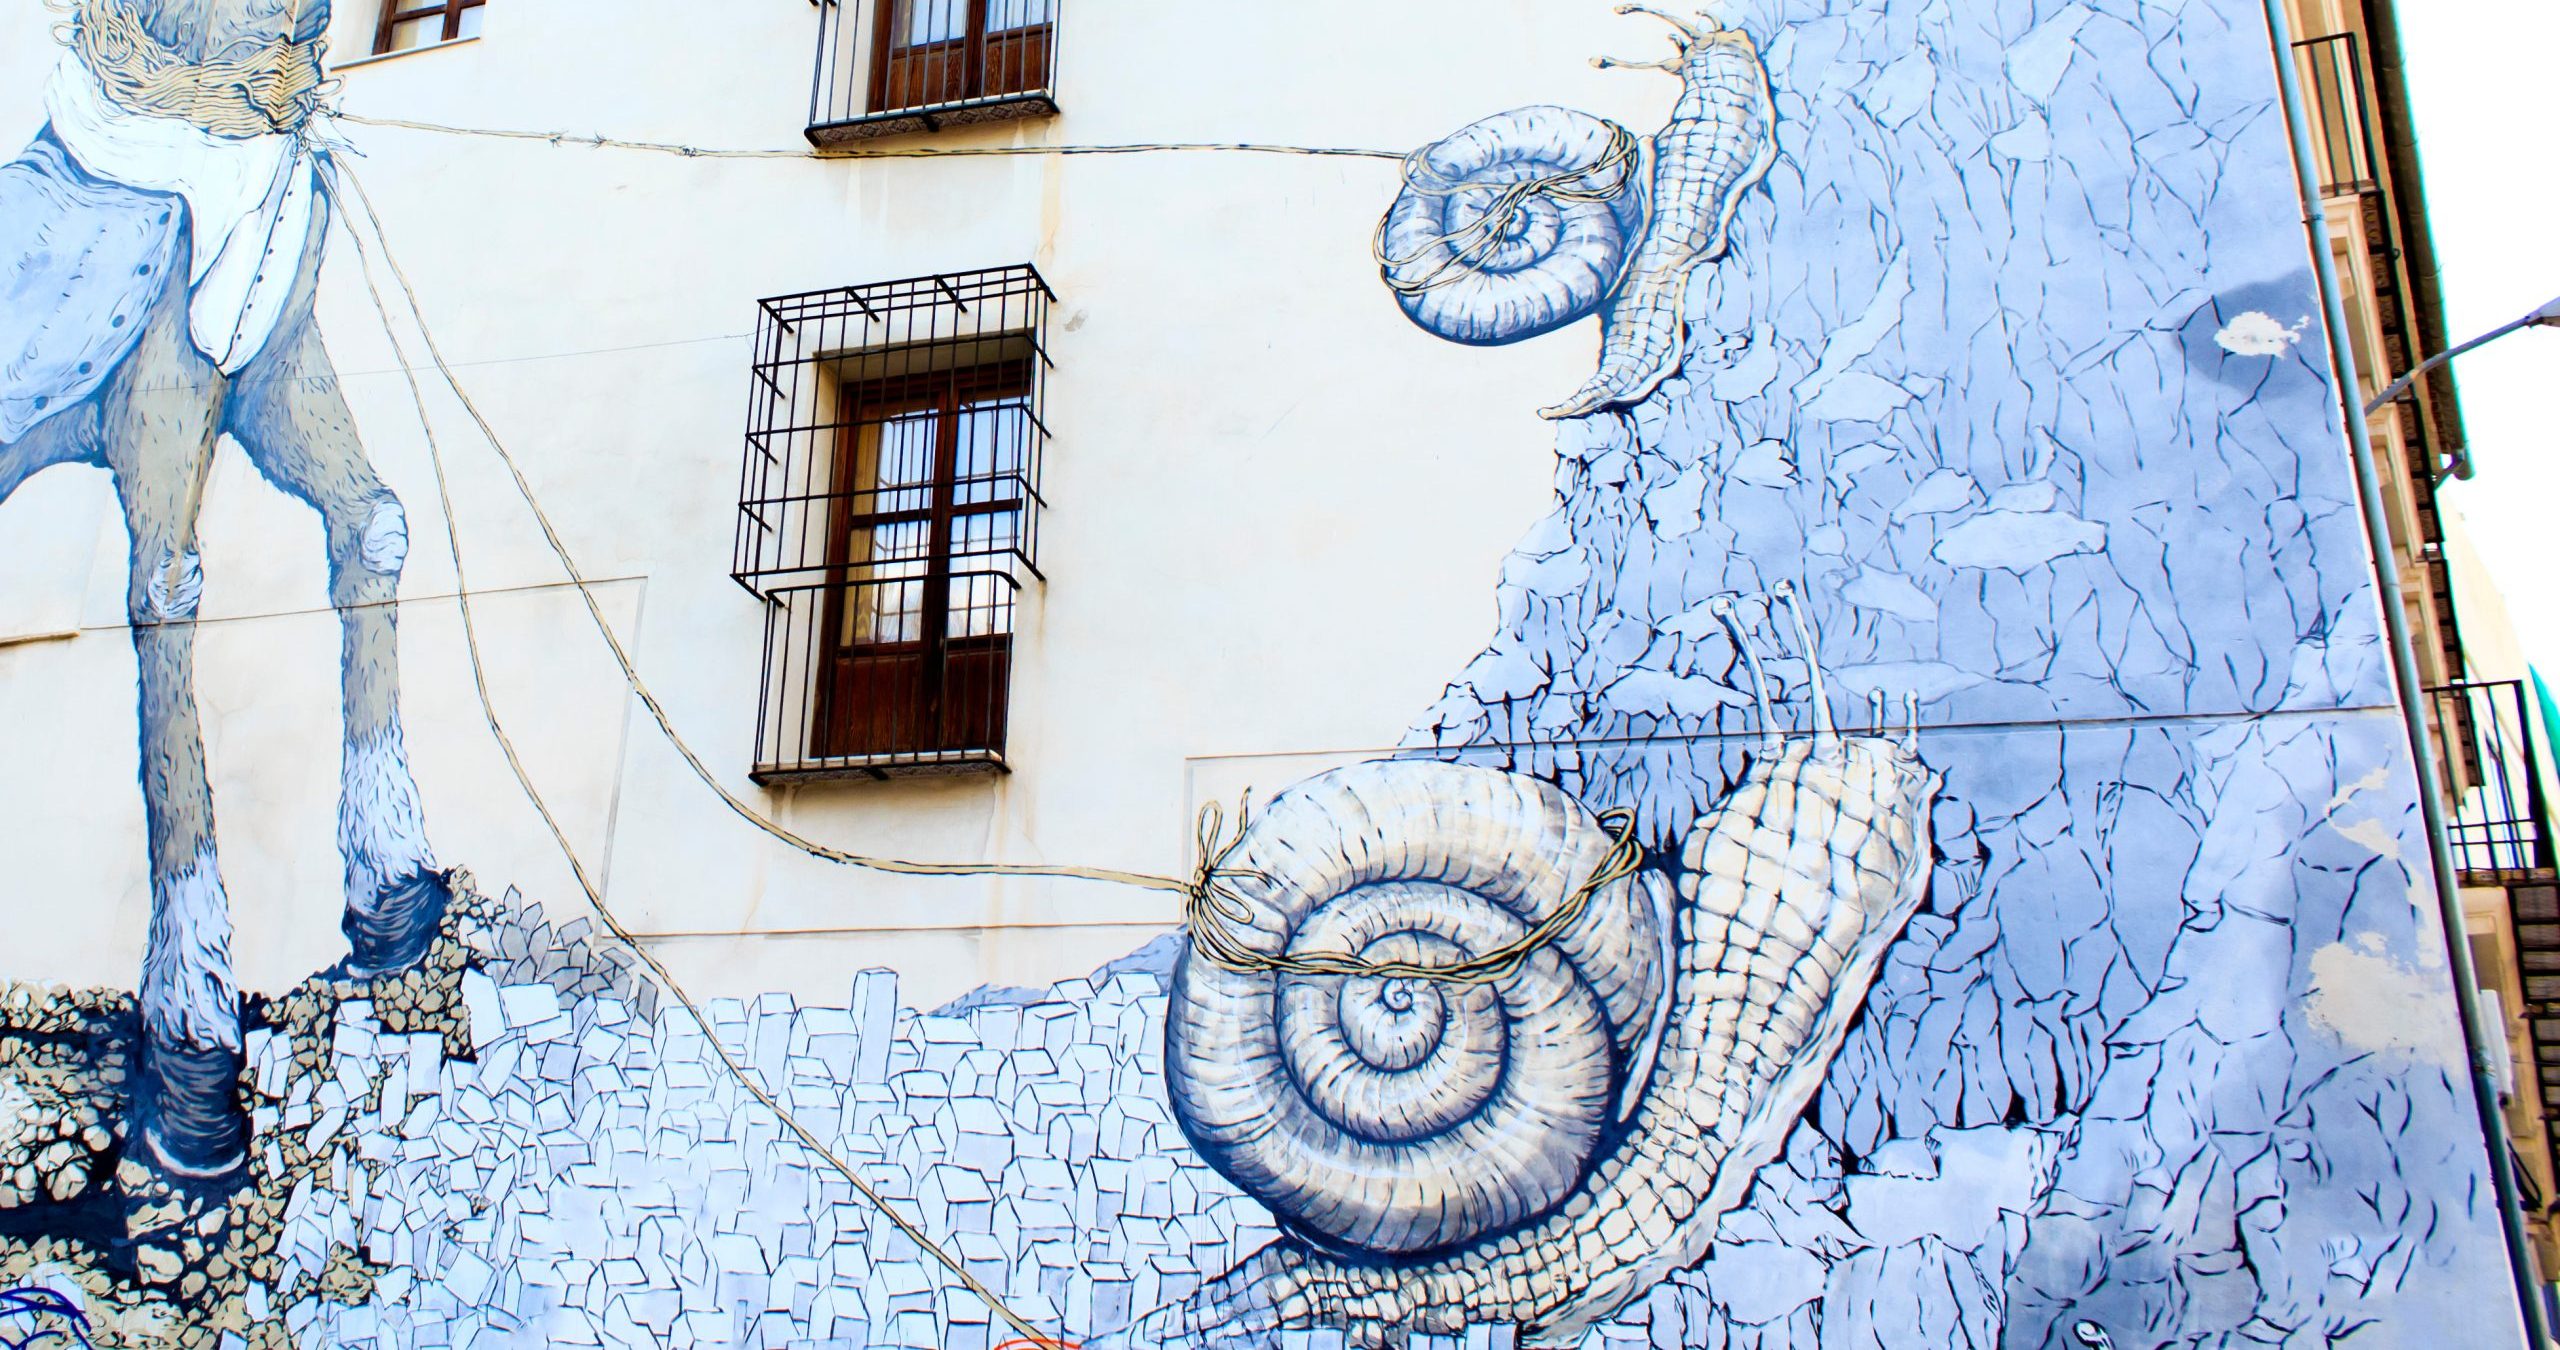 Snail mural